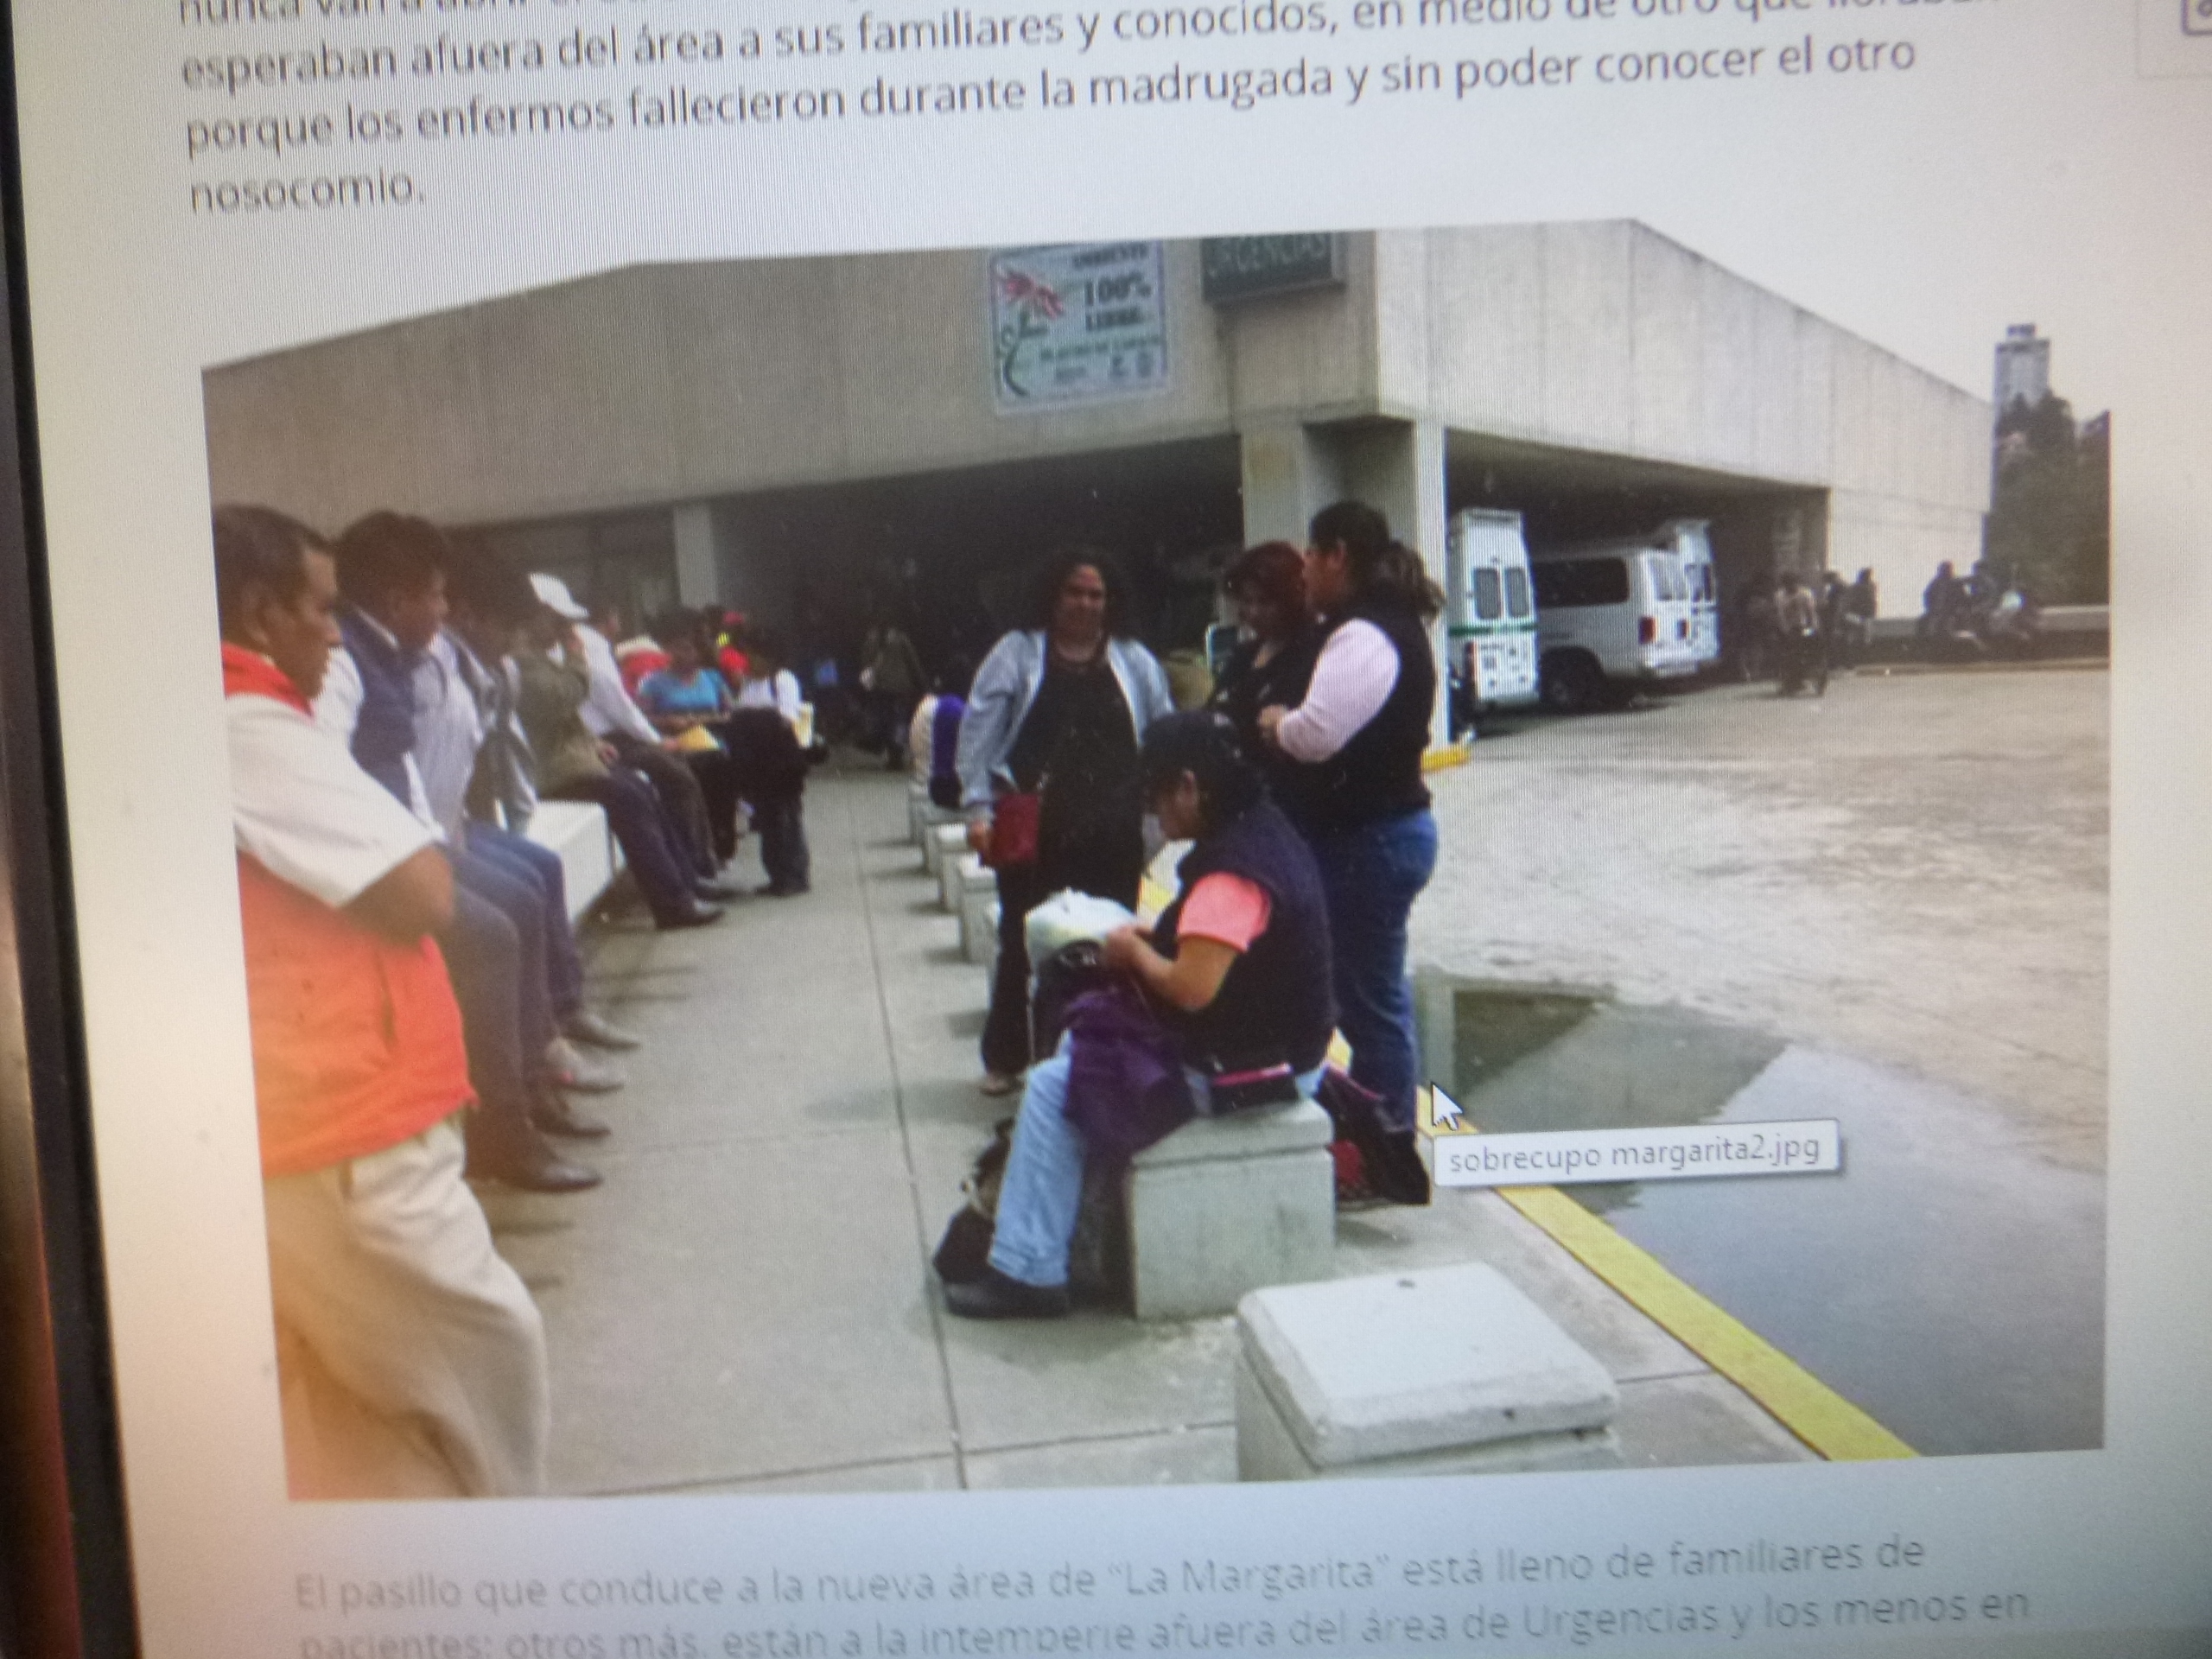 Más de 50 contagiados en el Hospital de la Margarita, denuncian trabajadores